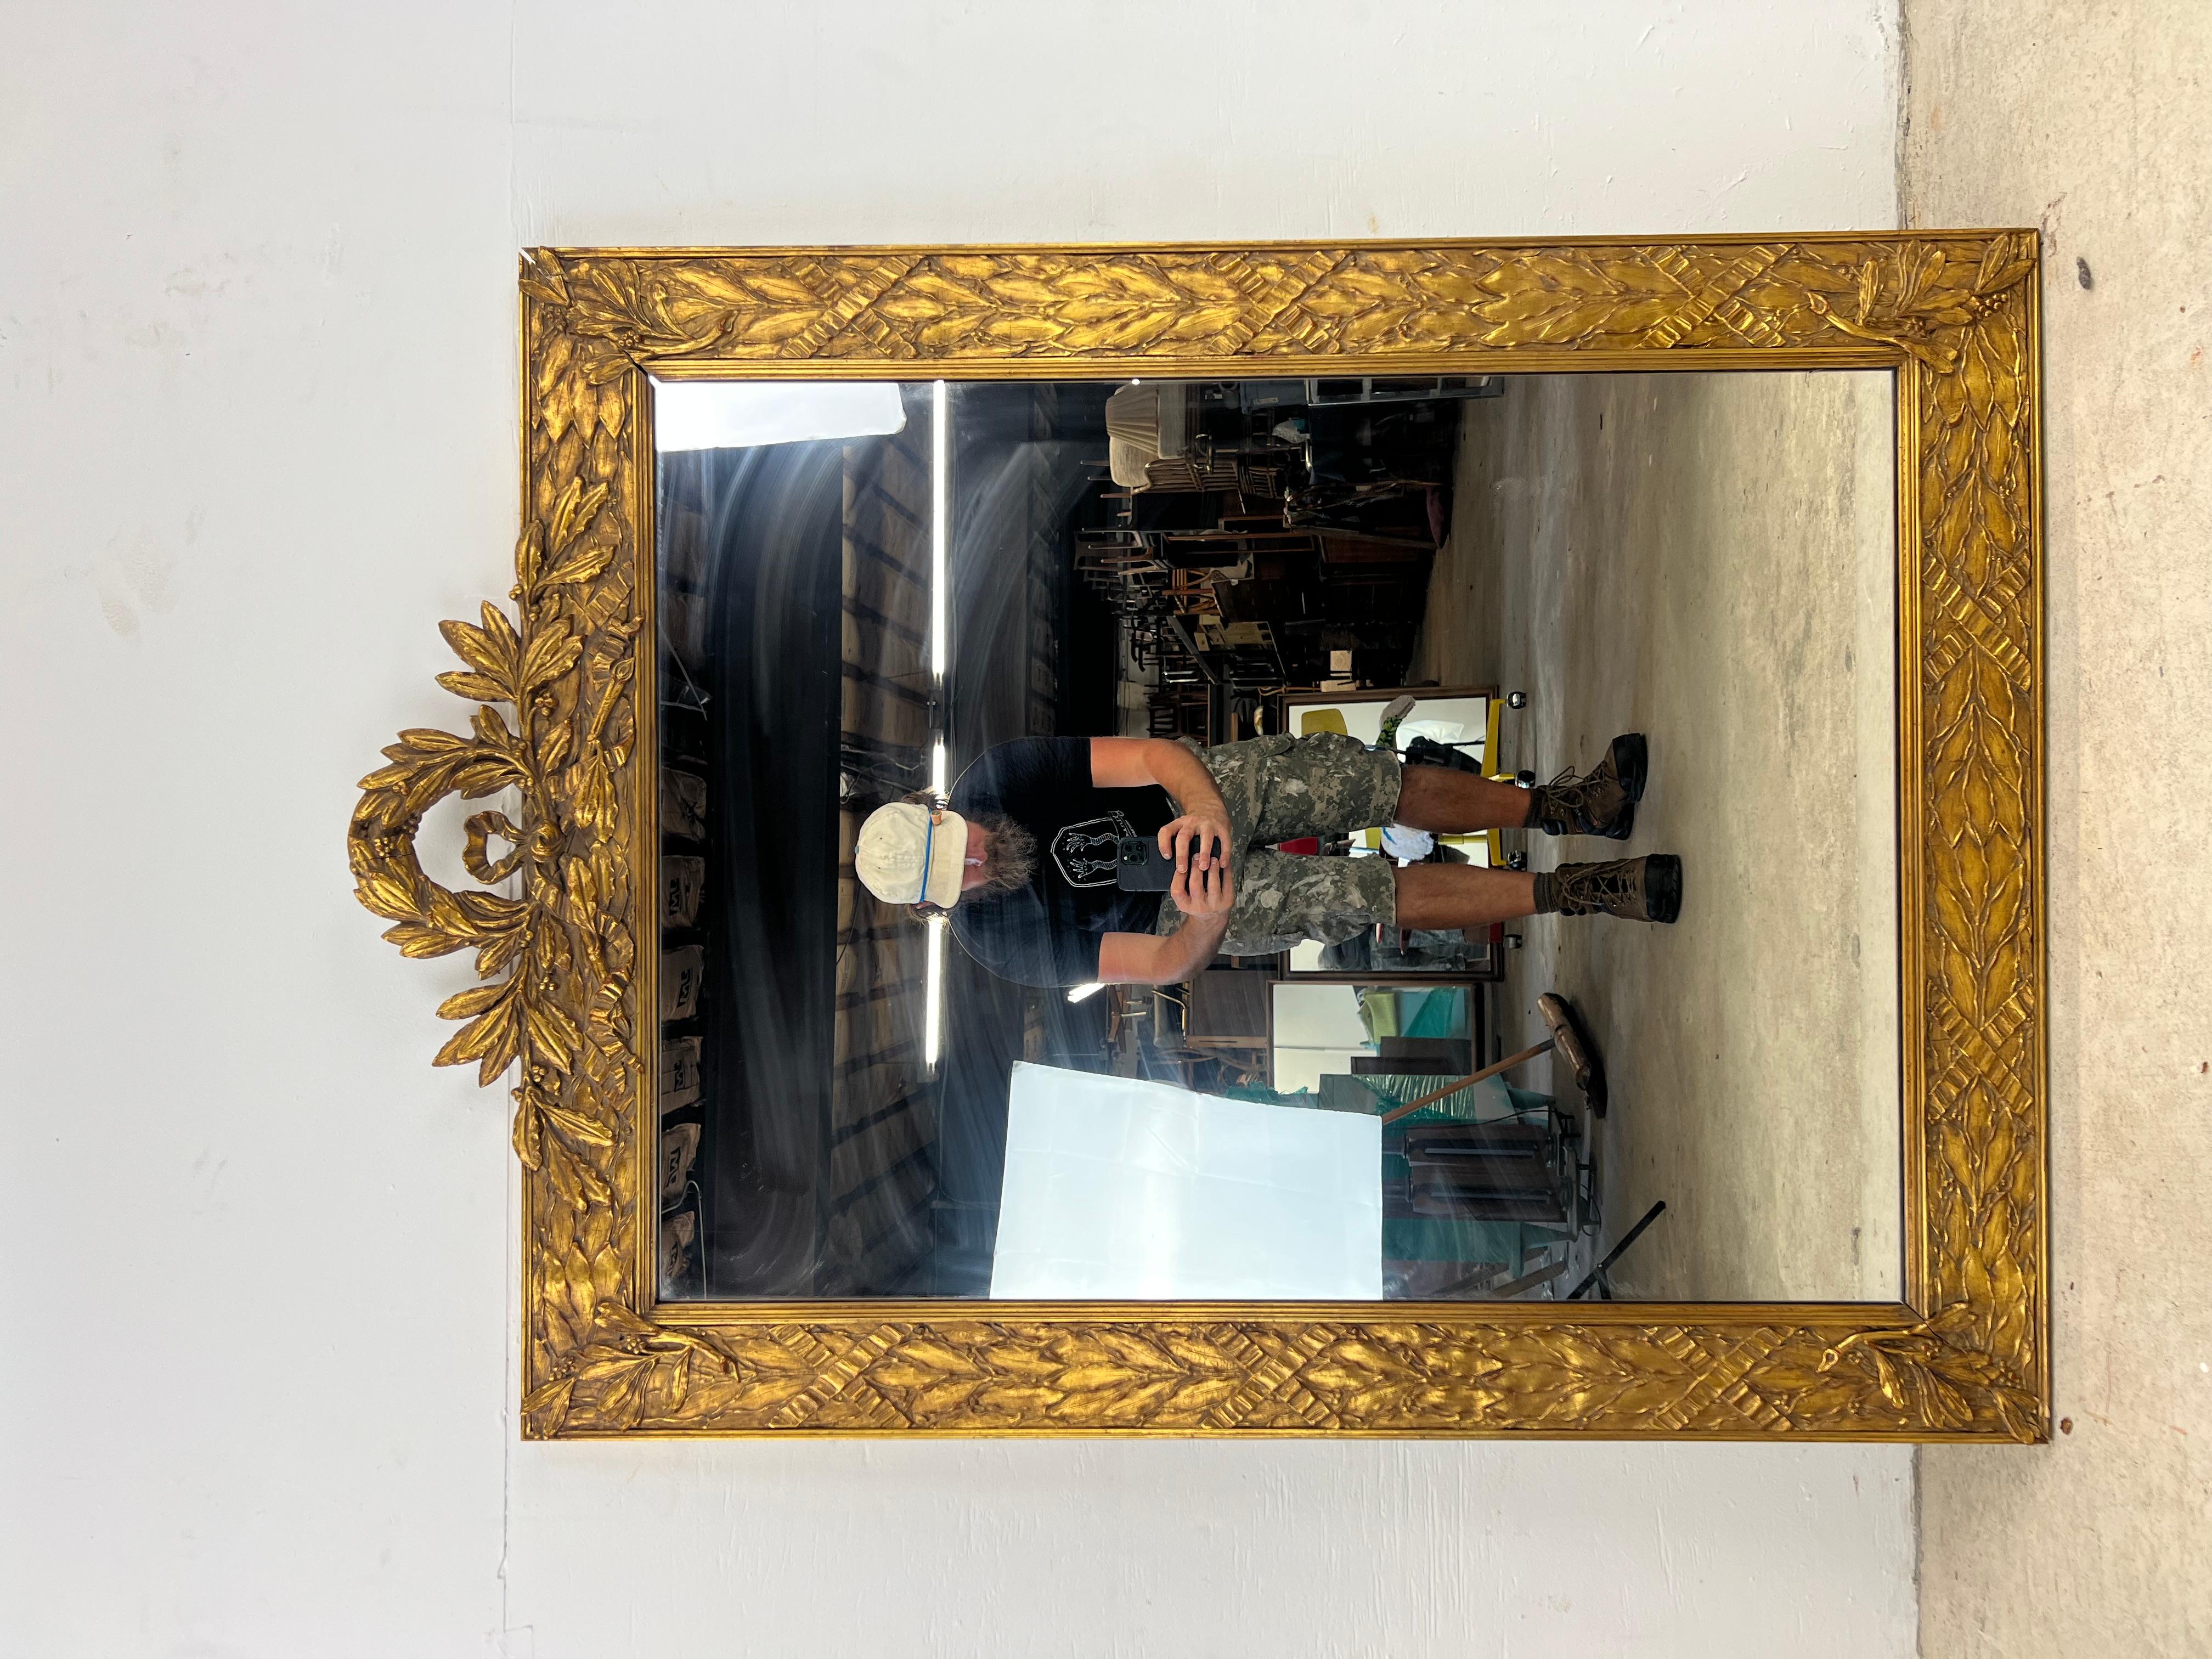 Dieser moderne Wandspiegel aus der Mitte des Jahrhunderts von Drexel hat einen Hartholzrahmen mit einzigartigen geschnitzten Details, Vintage-Spiegelglas und Klavierdraht zum Aufhängen.

Die passende Lowboy-Kommode und Highboy-Kommode sind separat